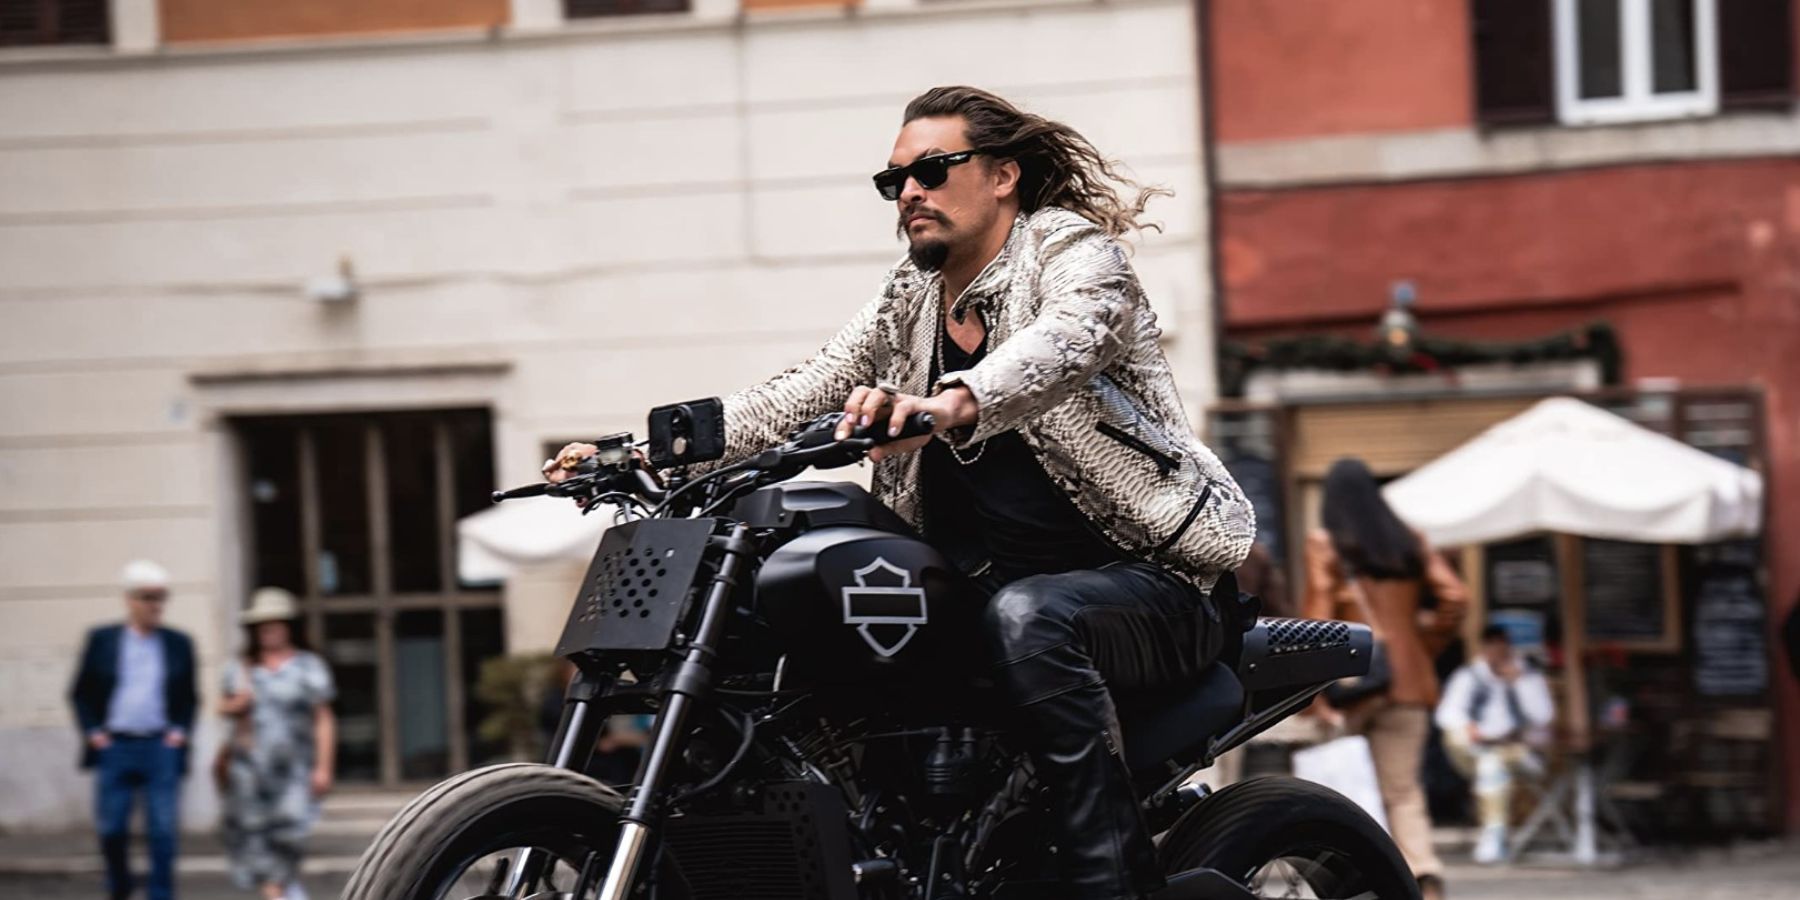 Jason Momoa as Dante Reyes riding motorcycle in Fast X